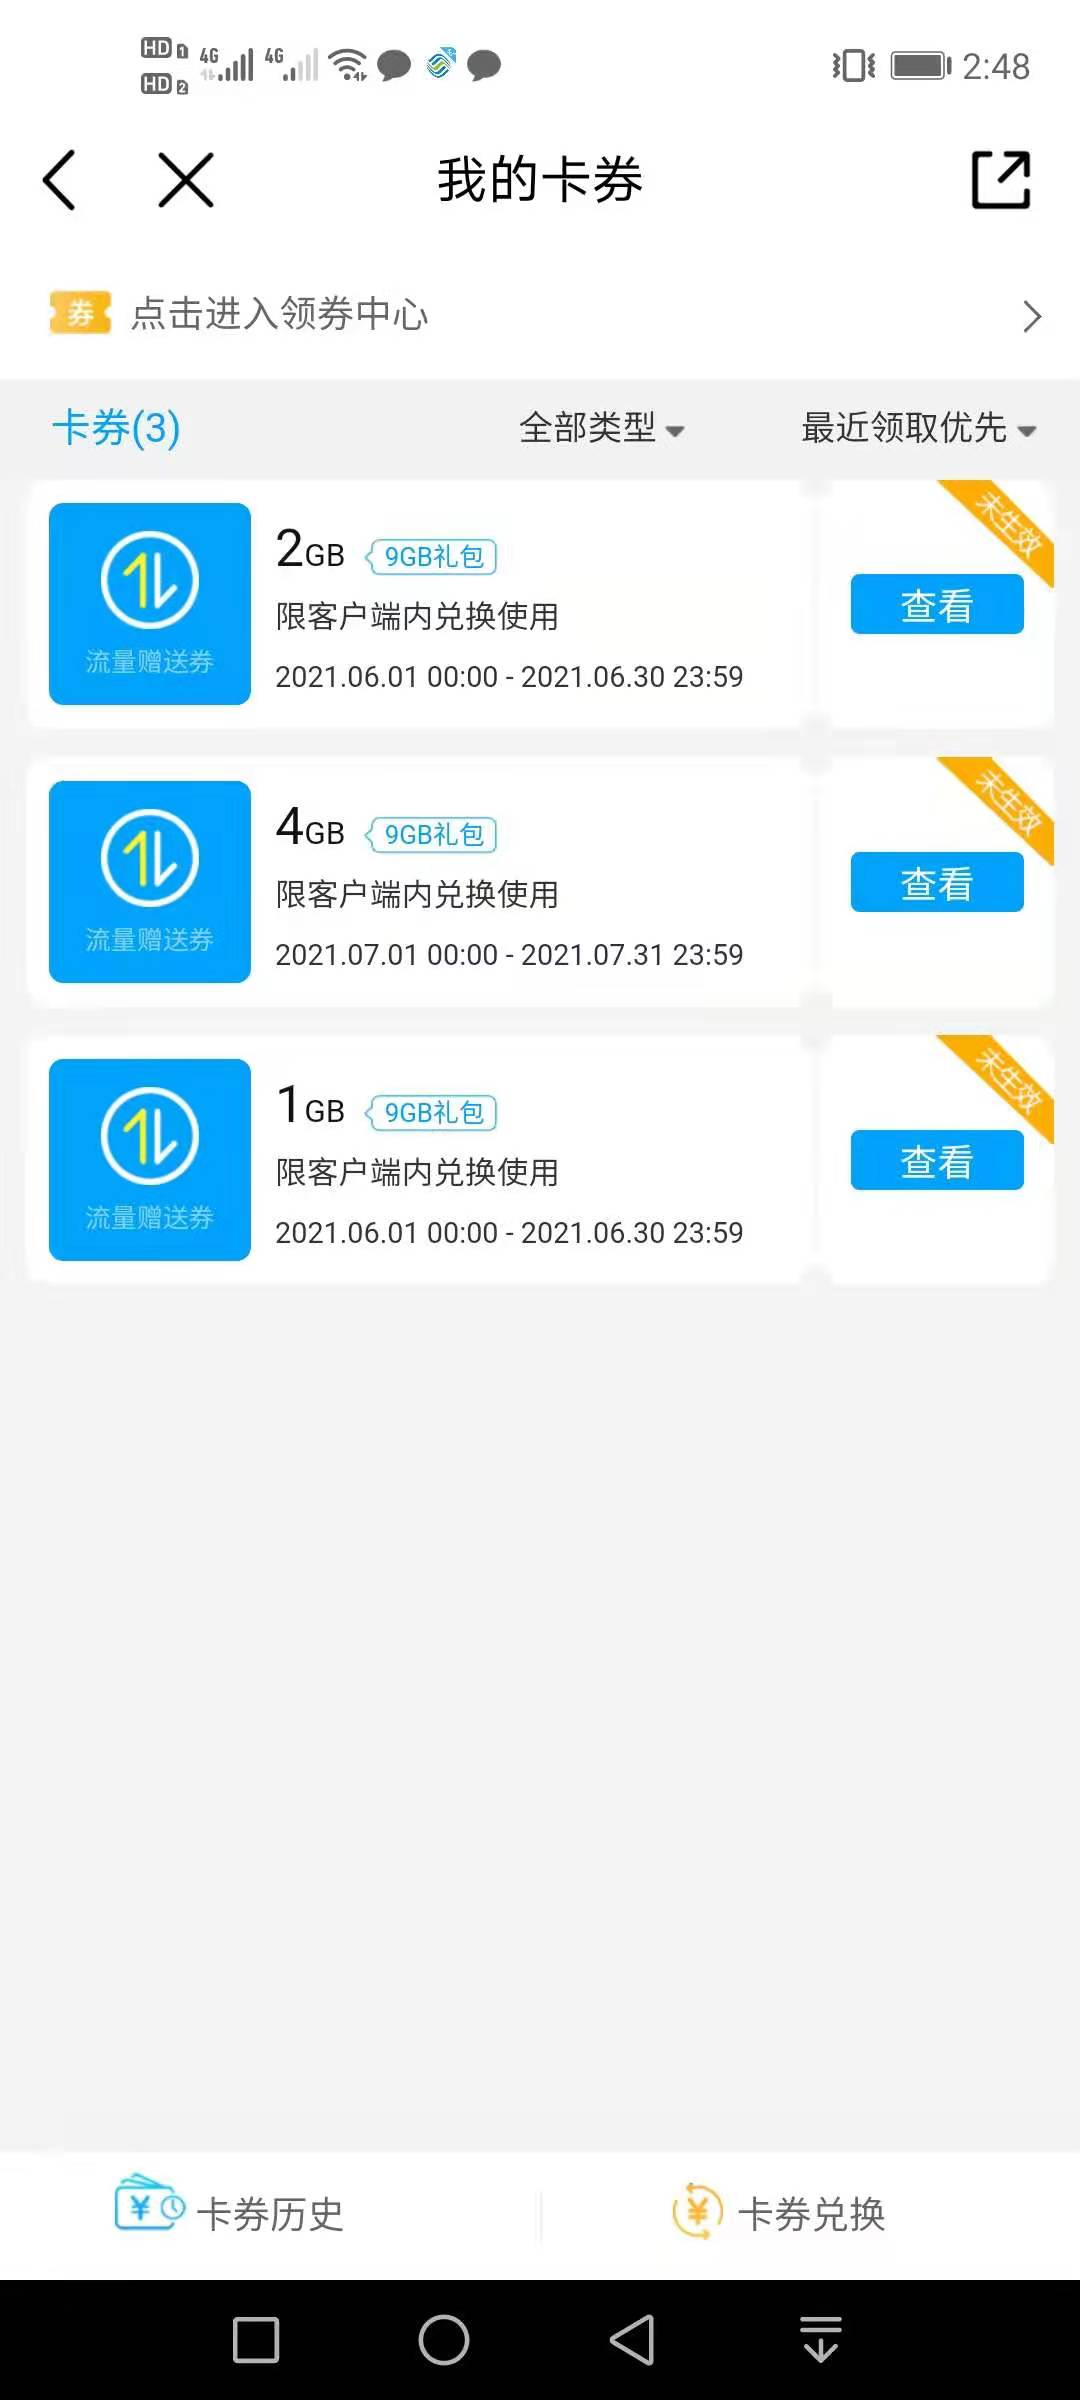 中国移动,送,9GB,流量,最高,100元,话费,活动,是, . 中国移动送9GB流量+最高100元话费活动是真的吗？